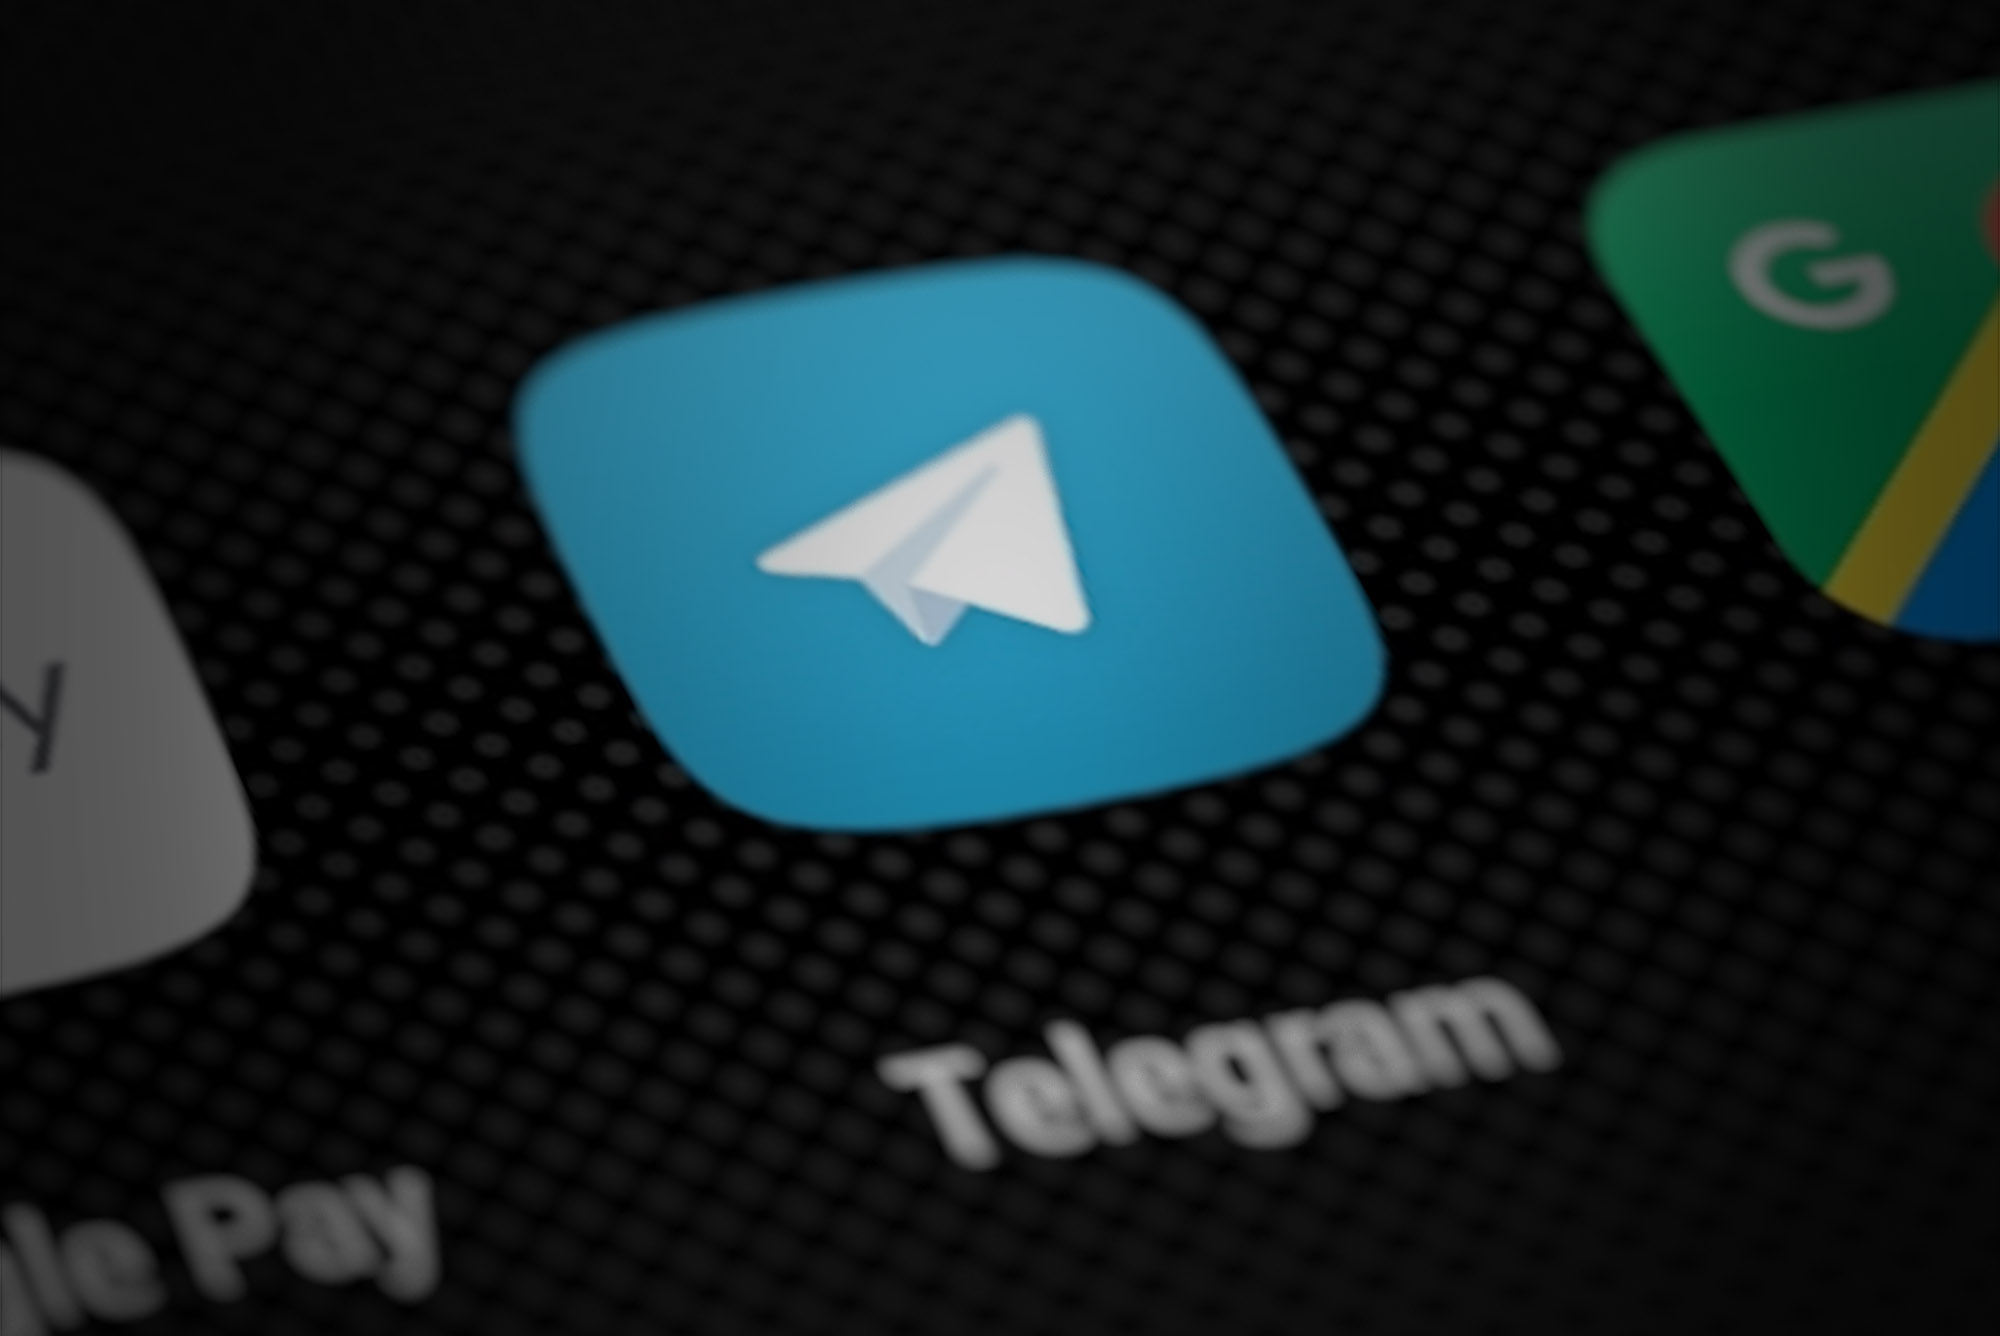 提升通讯应用功能与体验的购买 Telegram 账号的明智建议